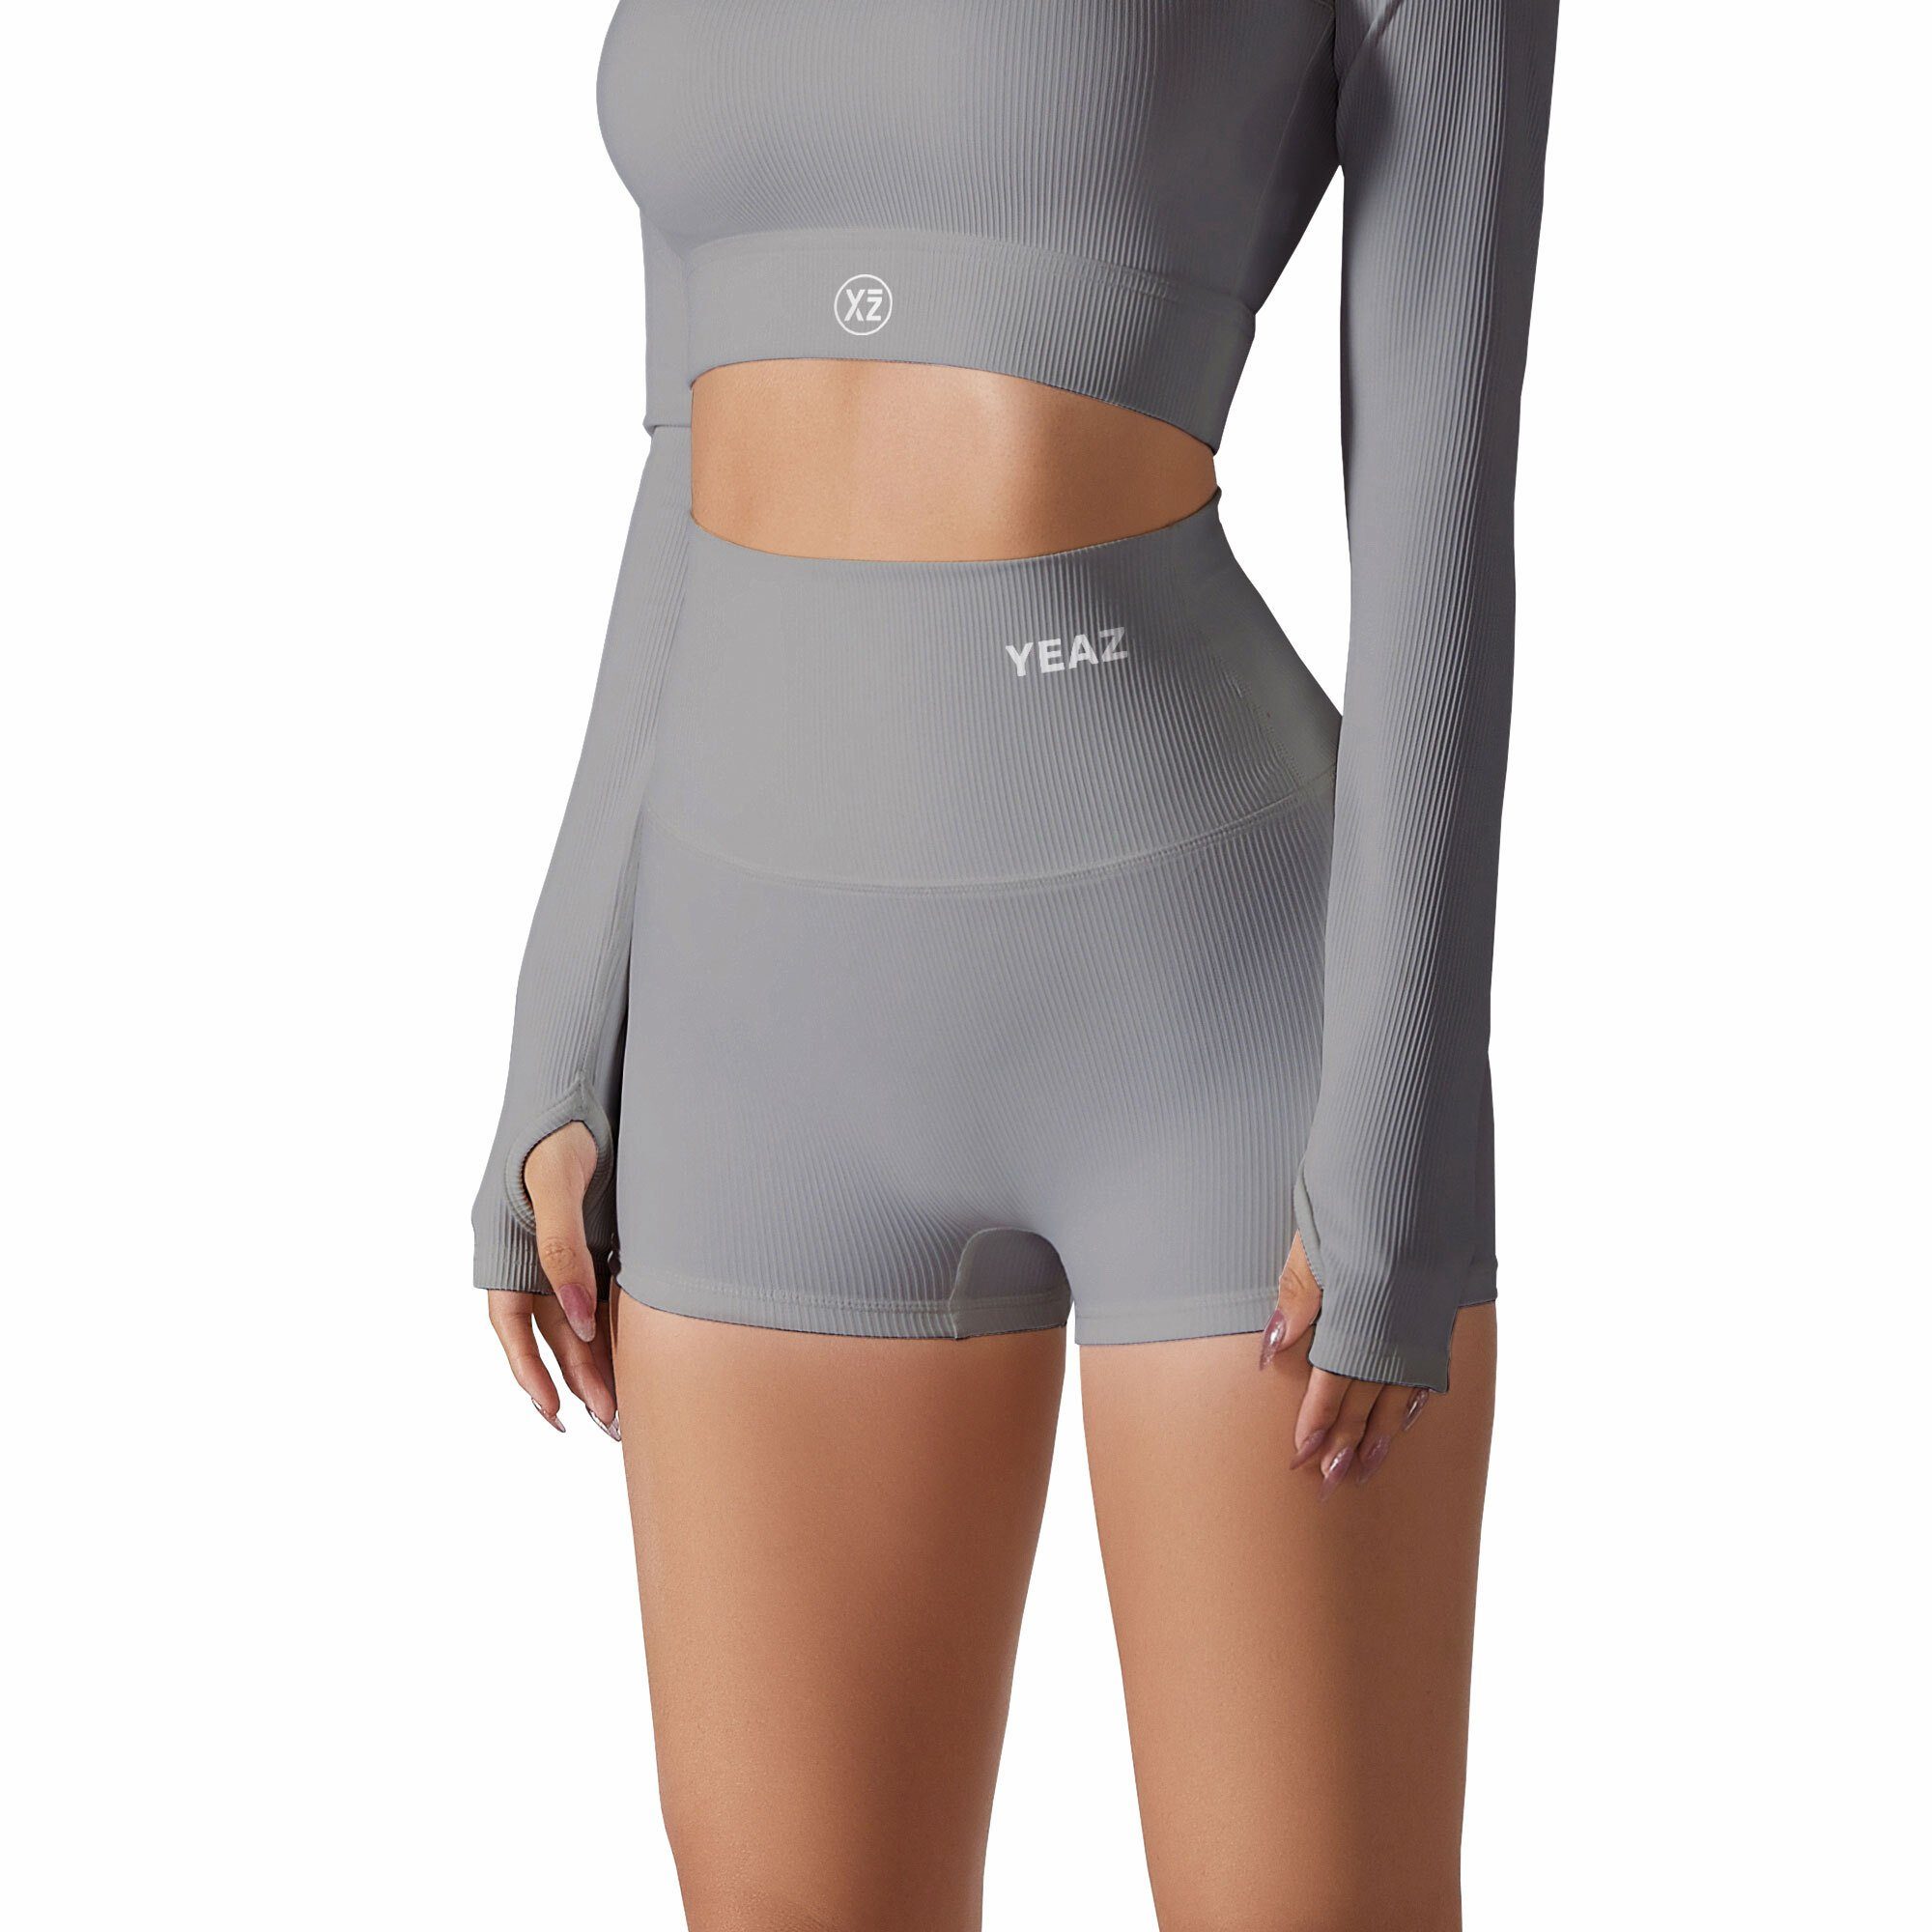 LEVEL (2-tlg) shorts CLUB Yogashorts grau shape YEAZ